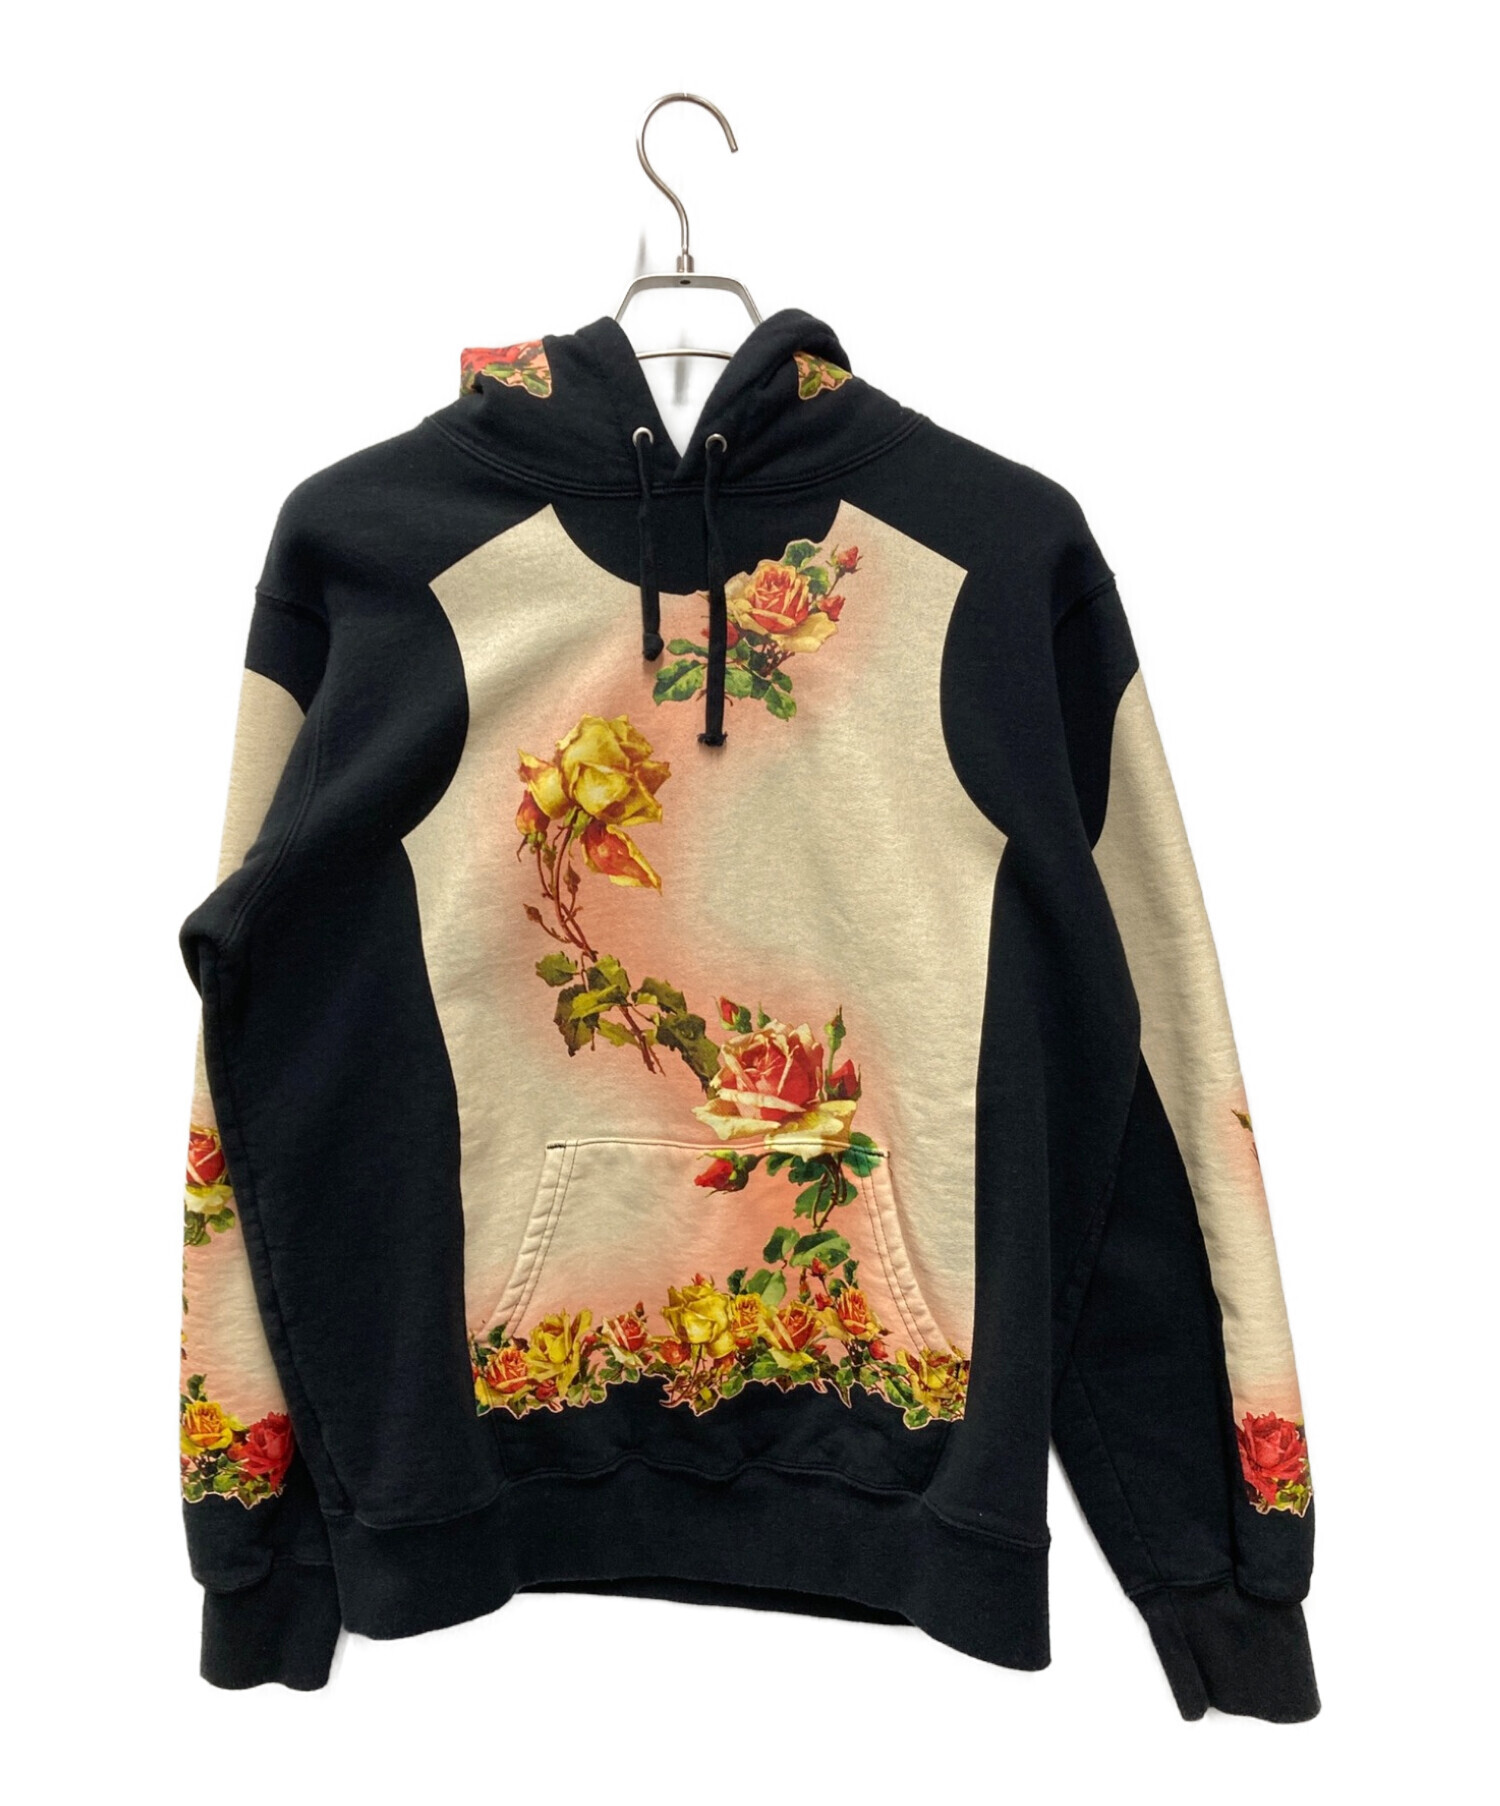 SUPREME (シュプリーム) Jean Paul GAULTIER (ジャンポールゴルチェ) Floral Print Hooded  Sweatshirt ブラック×イエロー サイズ:M